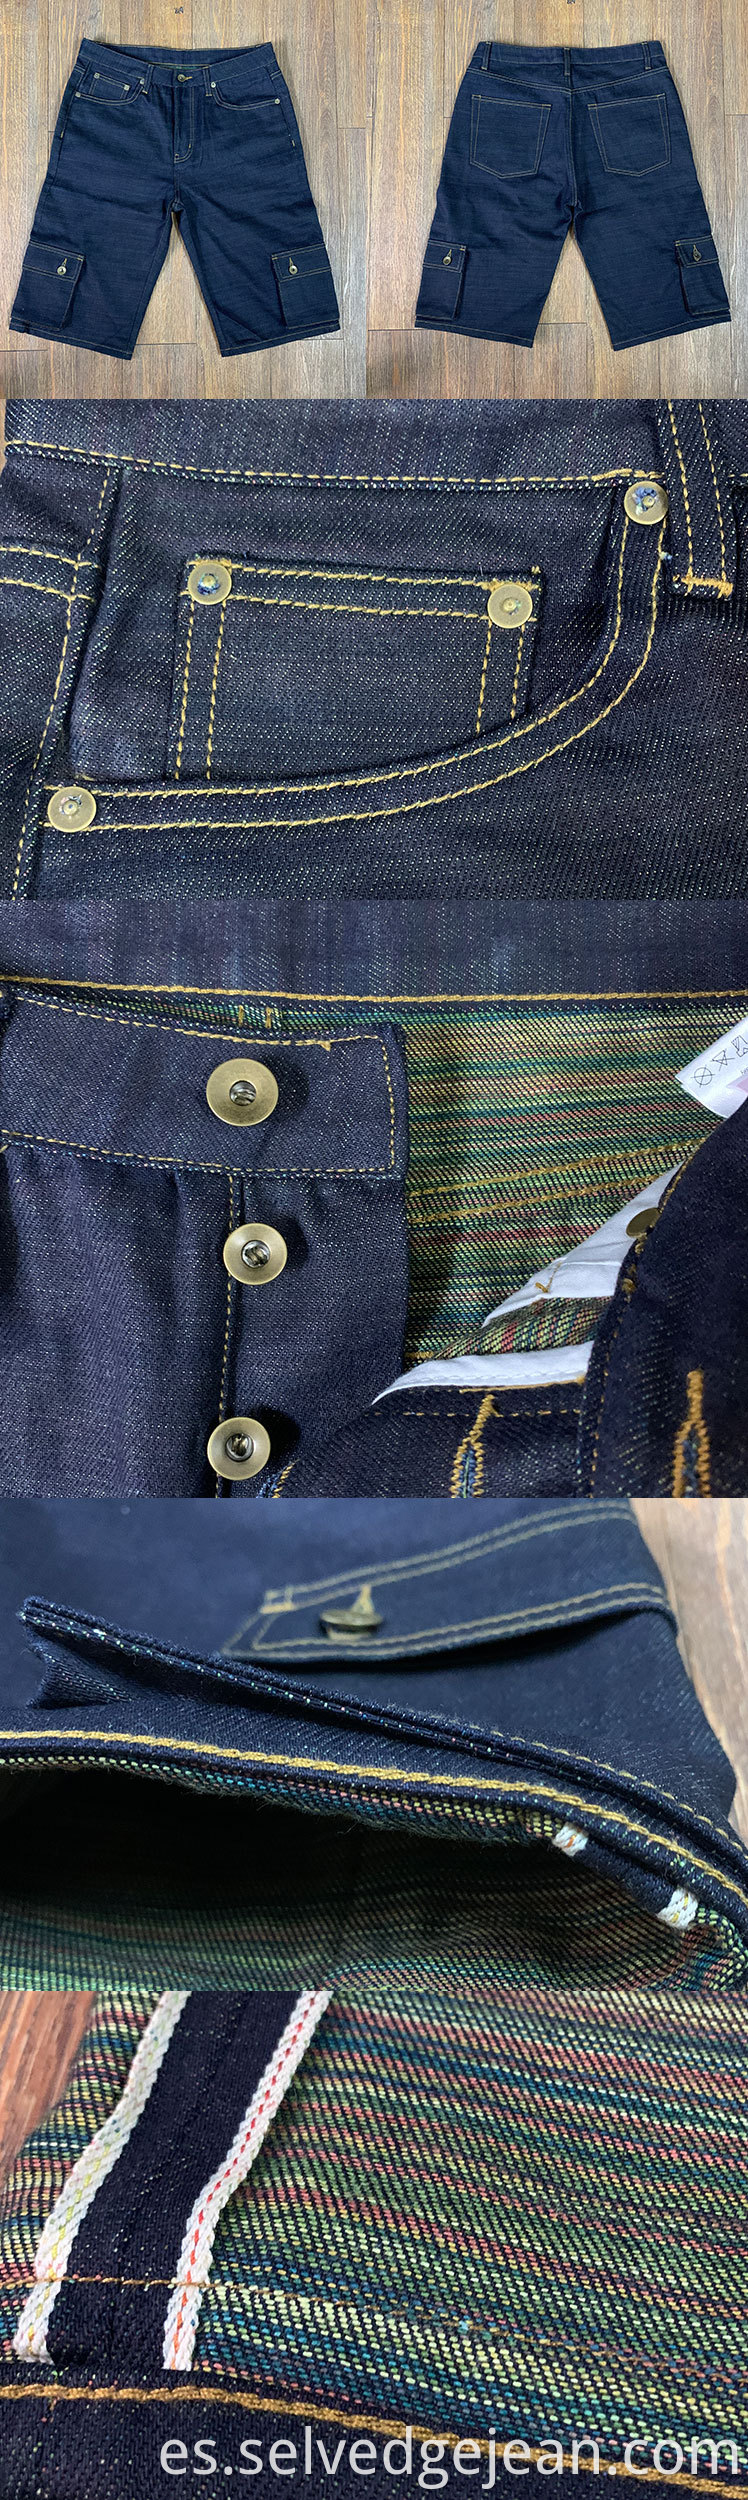 jeans jeans personalizado Selvage Indigo Candy Camseft 12oz Pantalones de carga multifunción Vintage